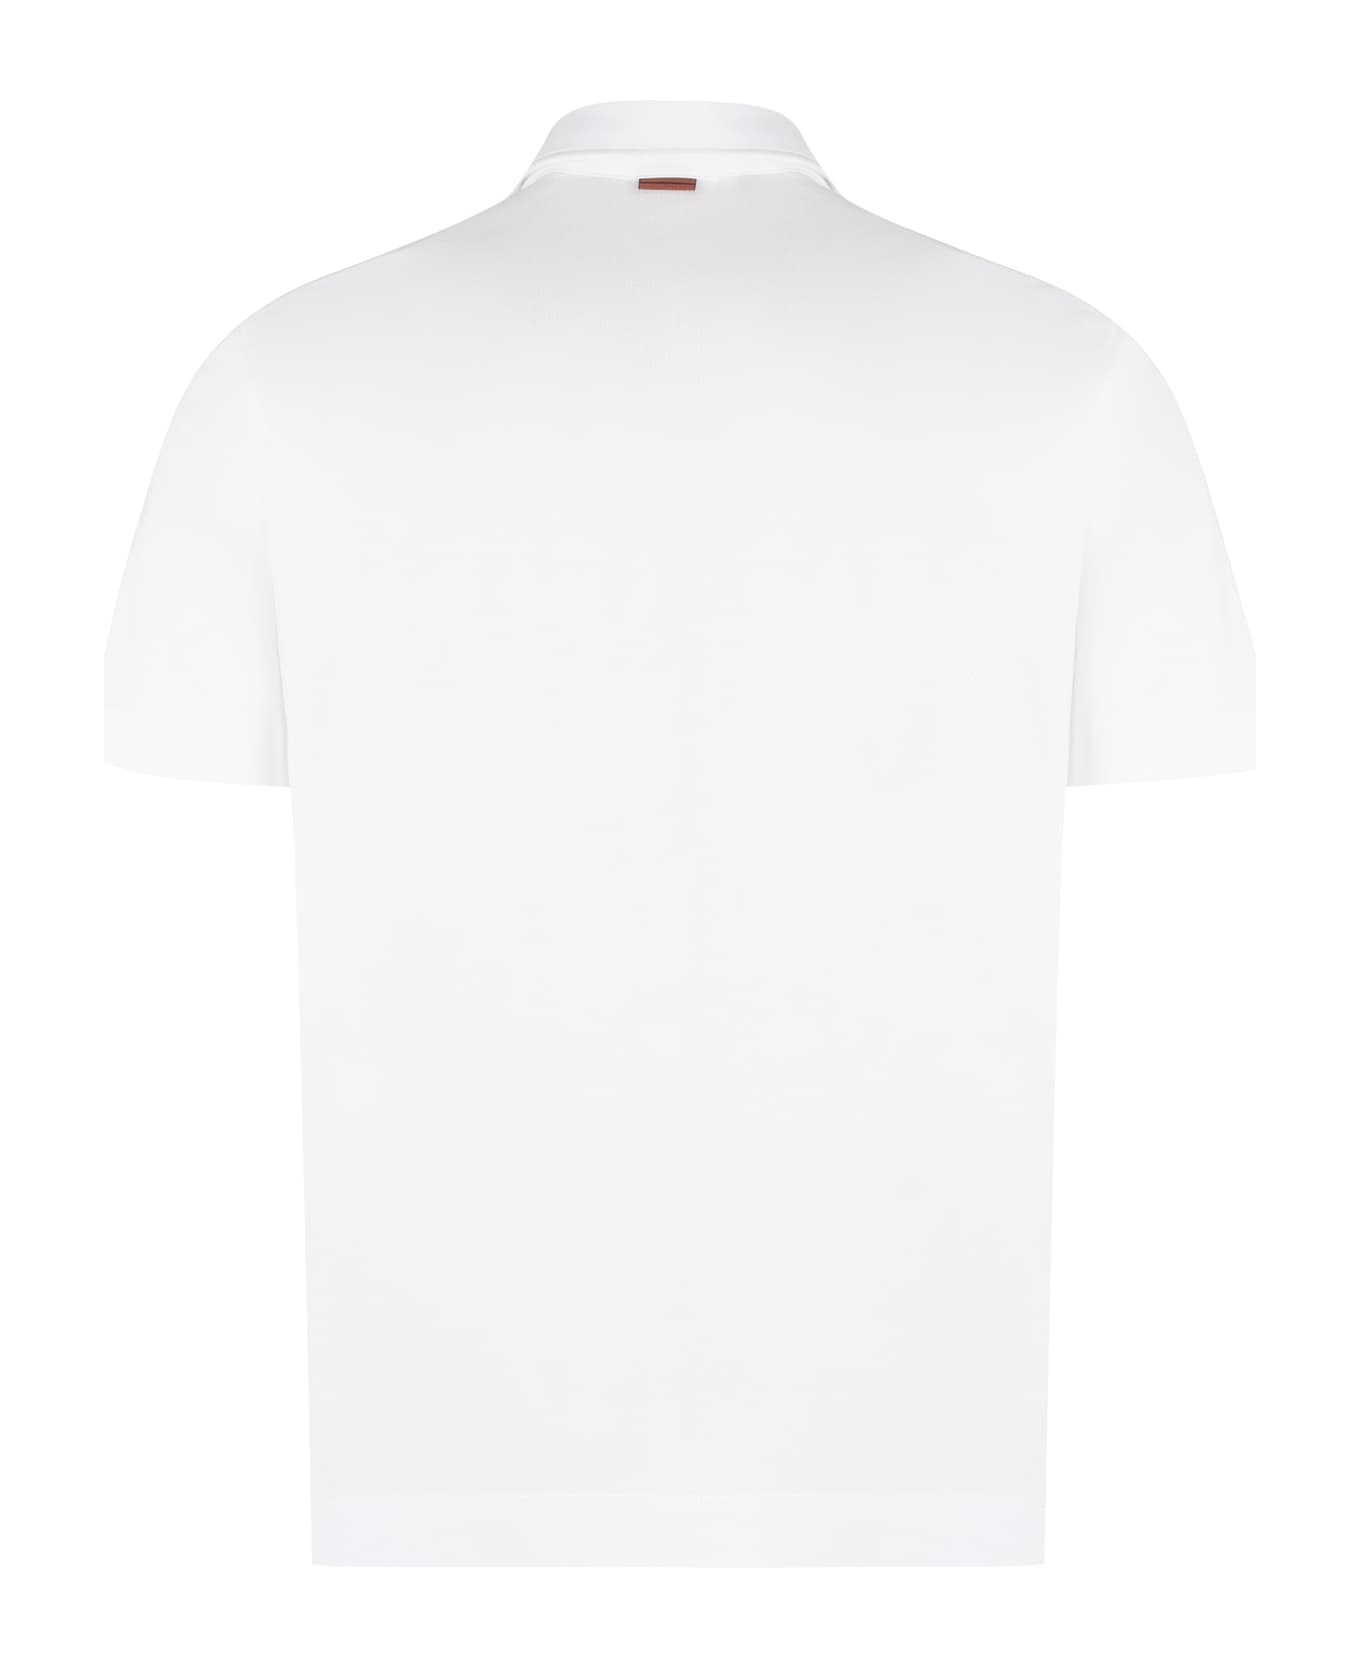 Zegna Short Sleeve Cotton Pique Polo Shirt - White